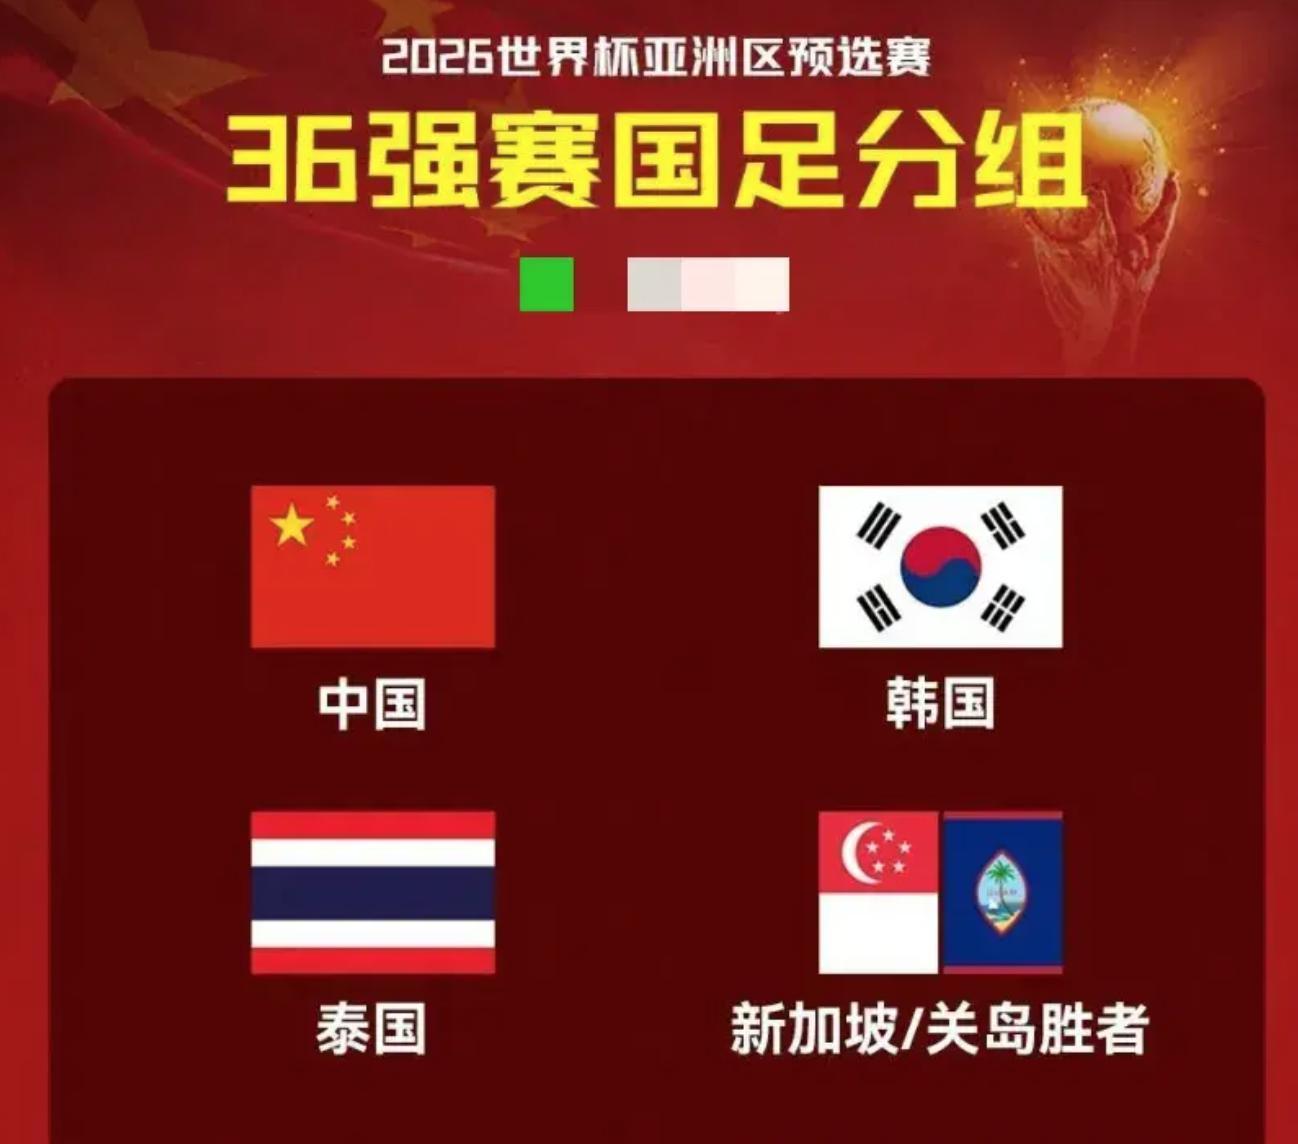 (下下签)中国男足世预赛赛程表!2026世预赛赛程时间表!